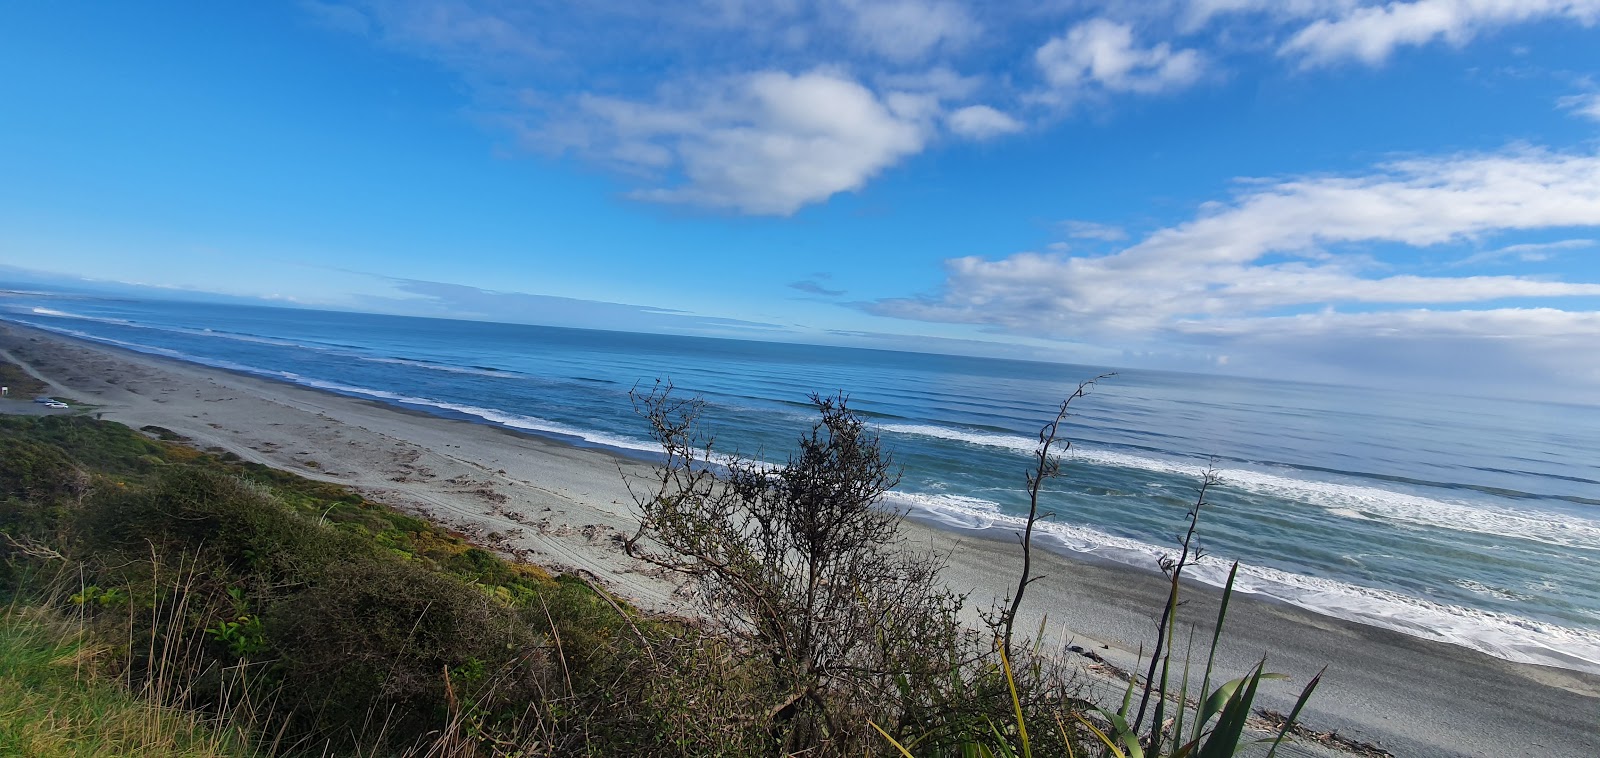 Zdjęcie Point Elizabeth Beach z powierzchnią szary drobny kamyk